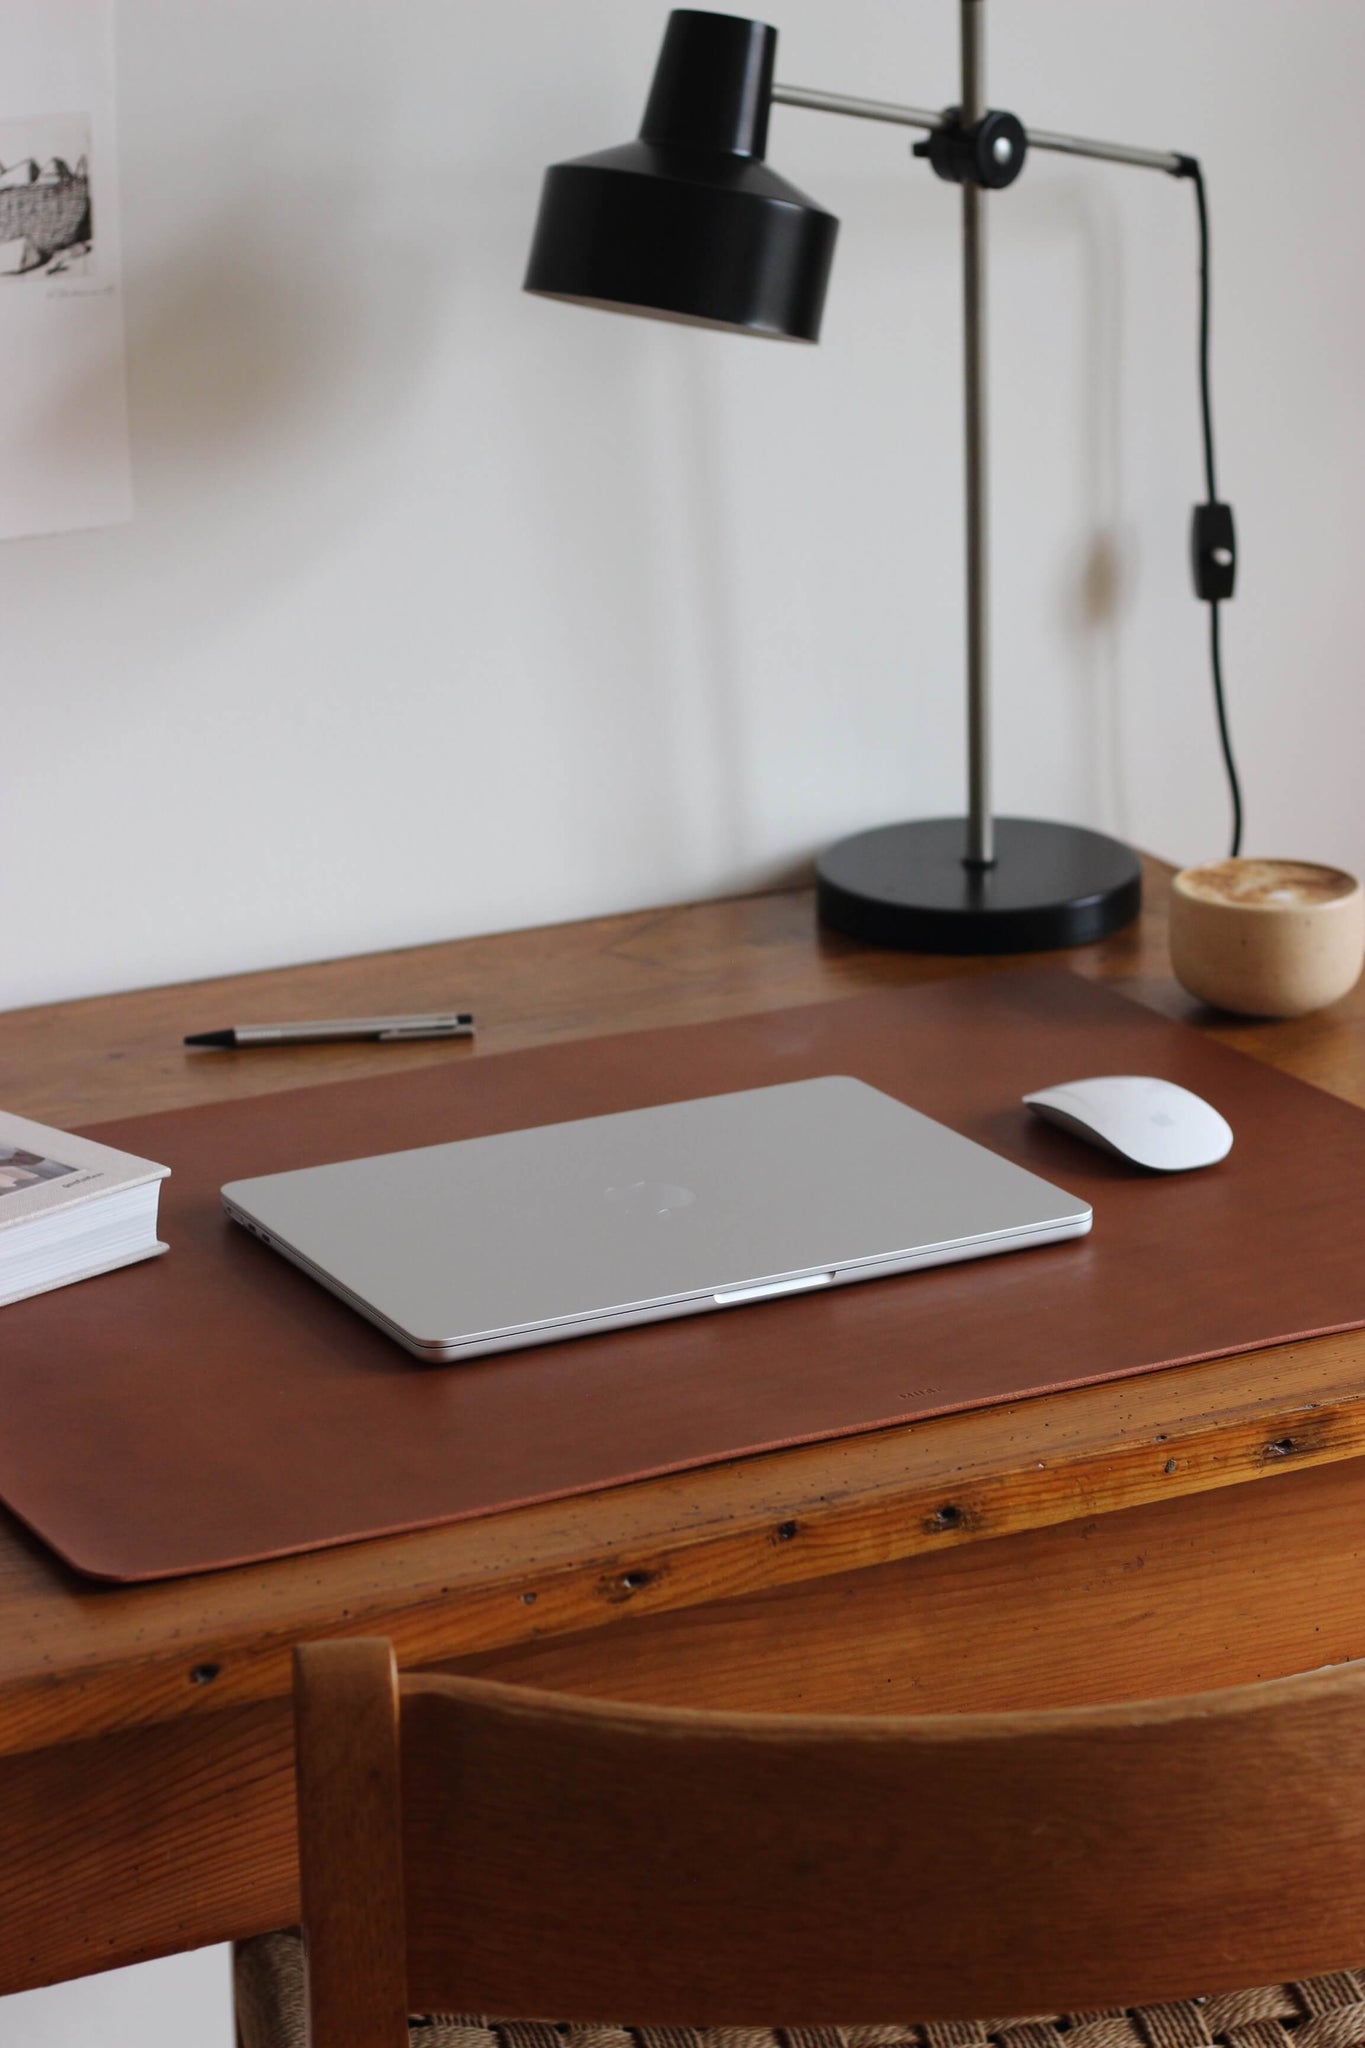 Seitliche Ansicht einer Leder Schreibtischunterlage in Braun auf einem Holzschreibtisch und darauf liegt ein zugeklapptes MacBook und eine Maus.